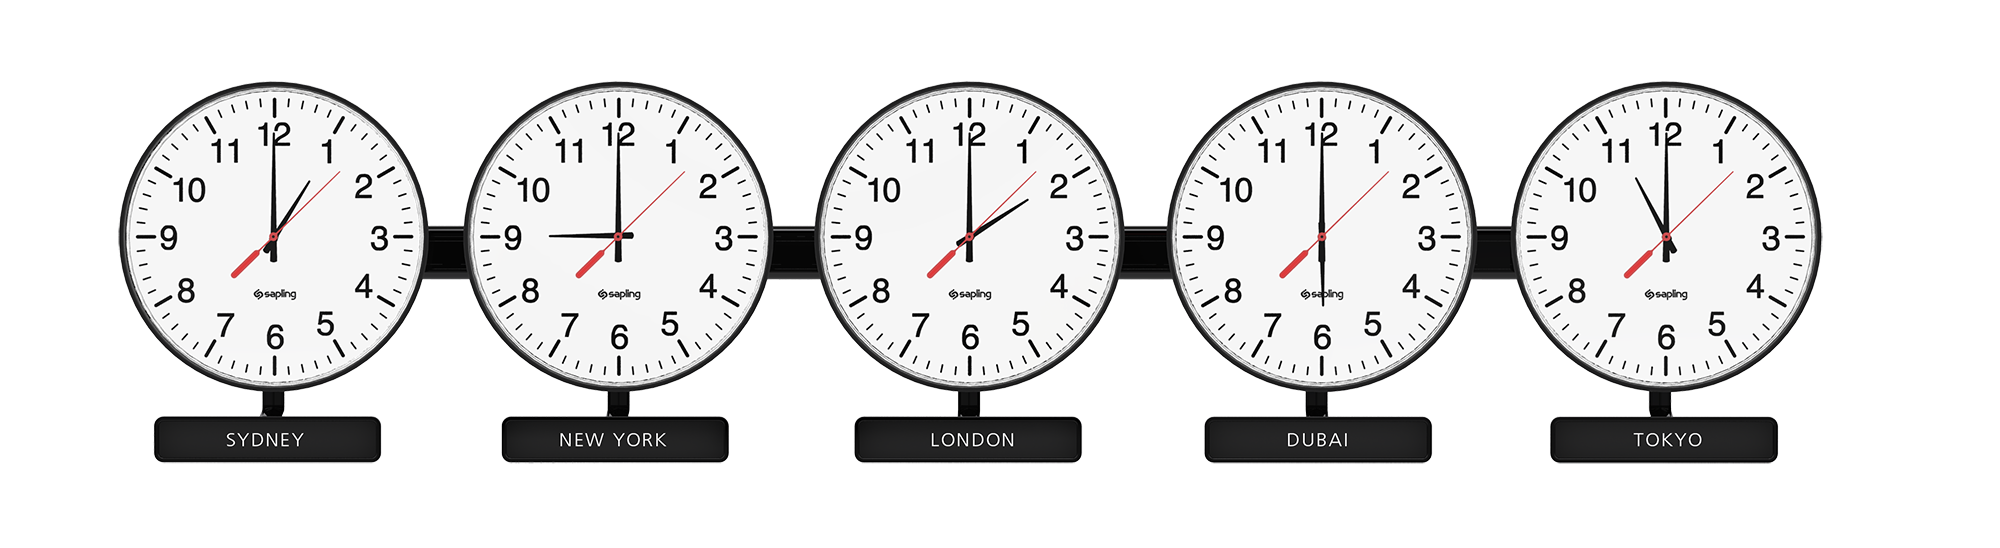 Часы показывающие разное время. Мировые часы настенные. Часы настенные Разное время. Часы настенные мировое время. Циферблаты с разным временем.